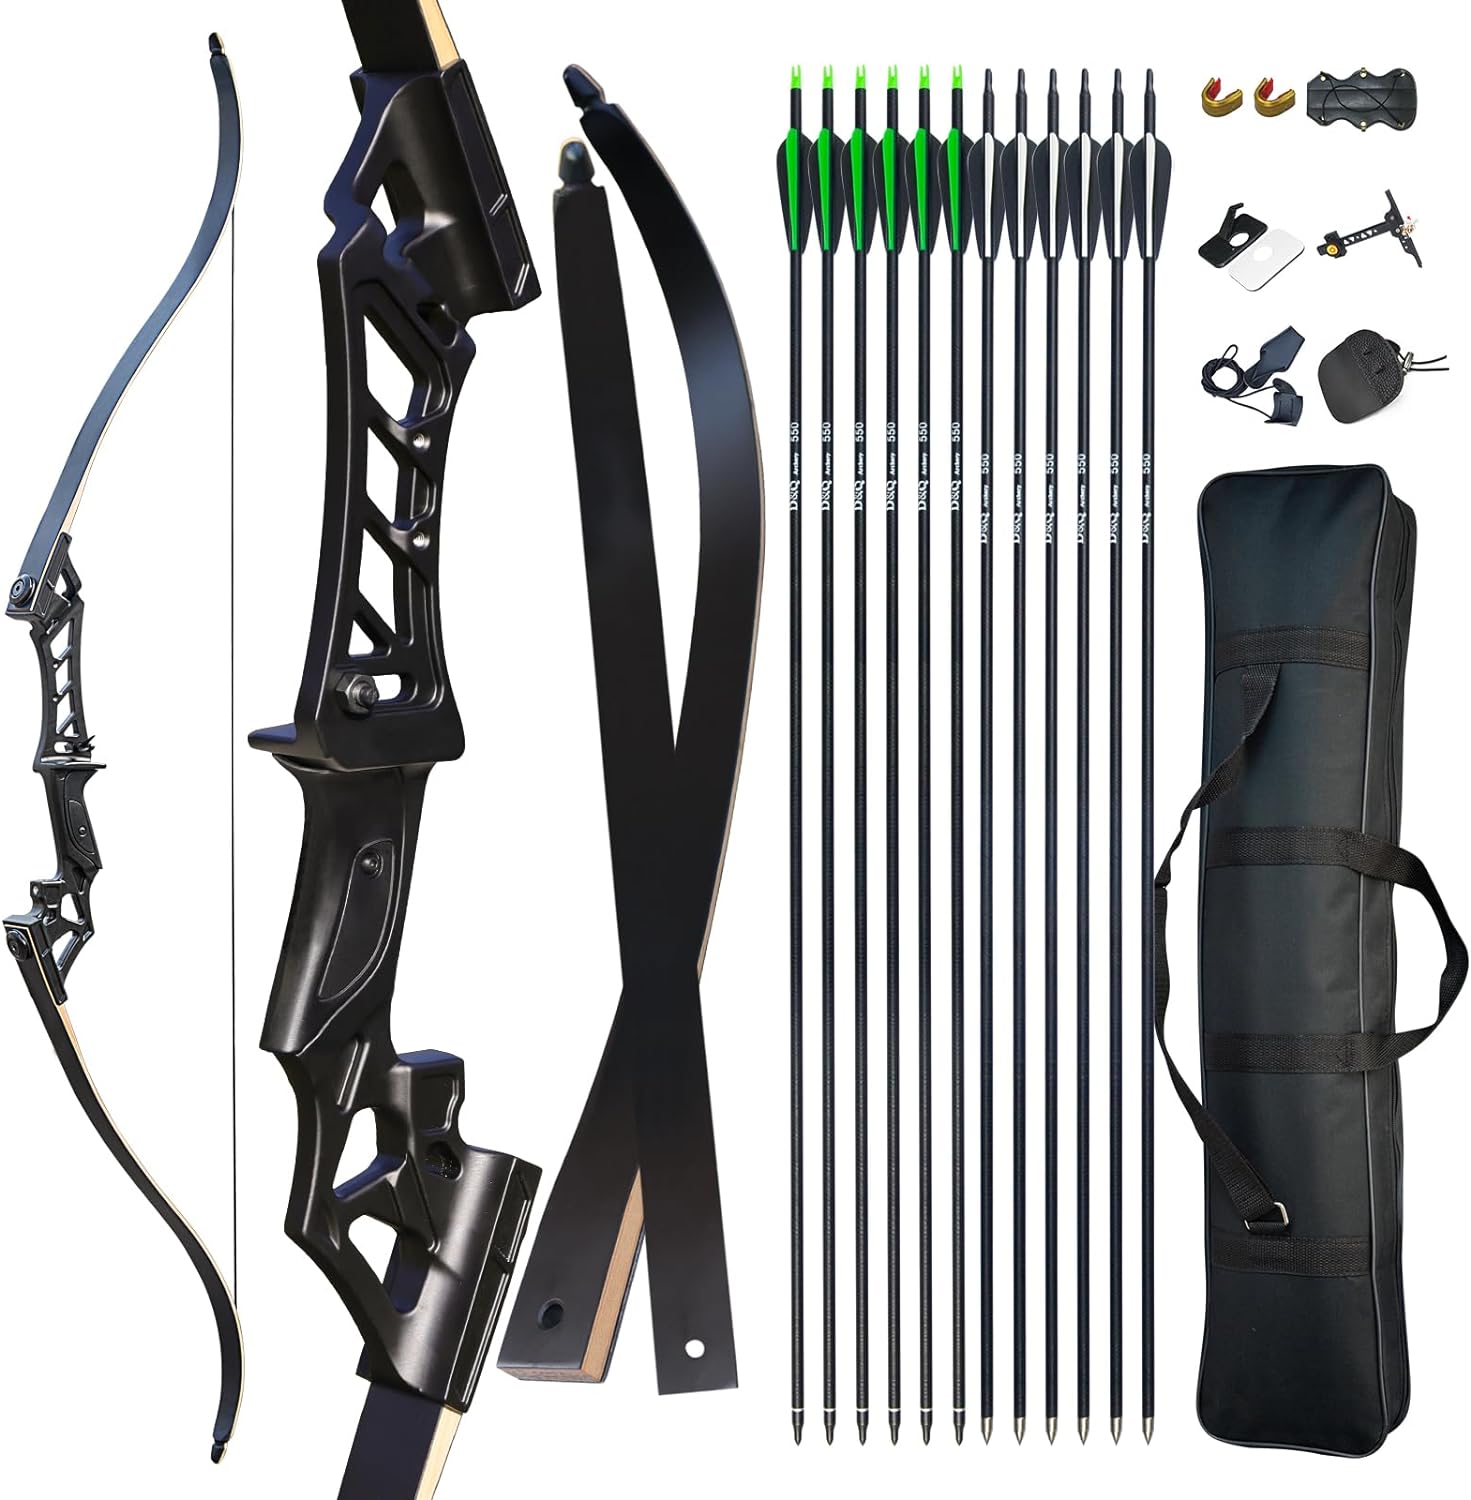 D&Q Archery Recurve Bow and Arrow Set